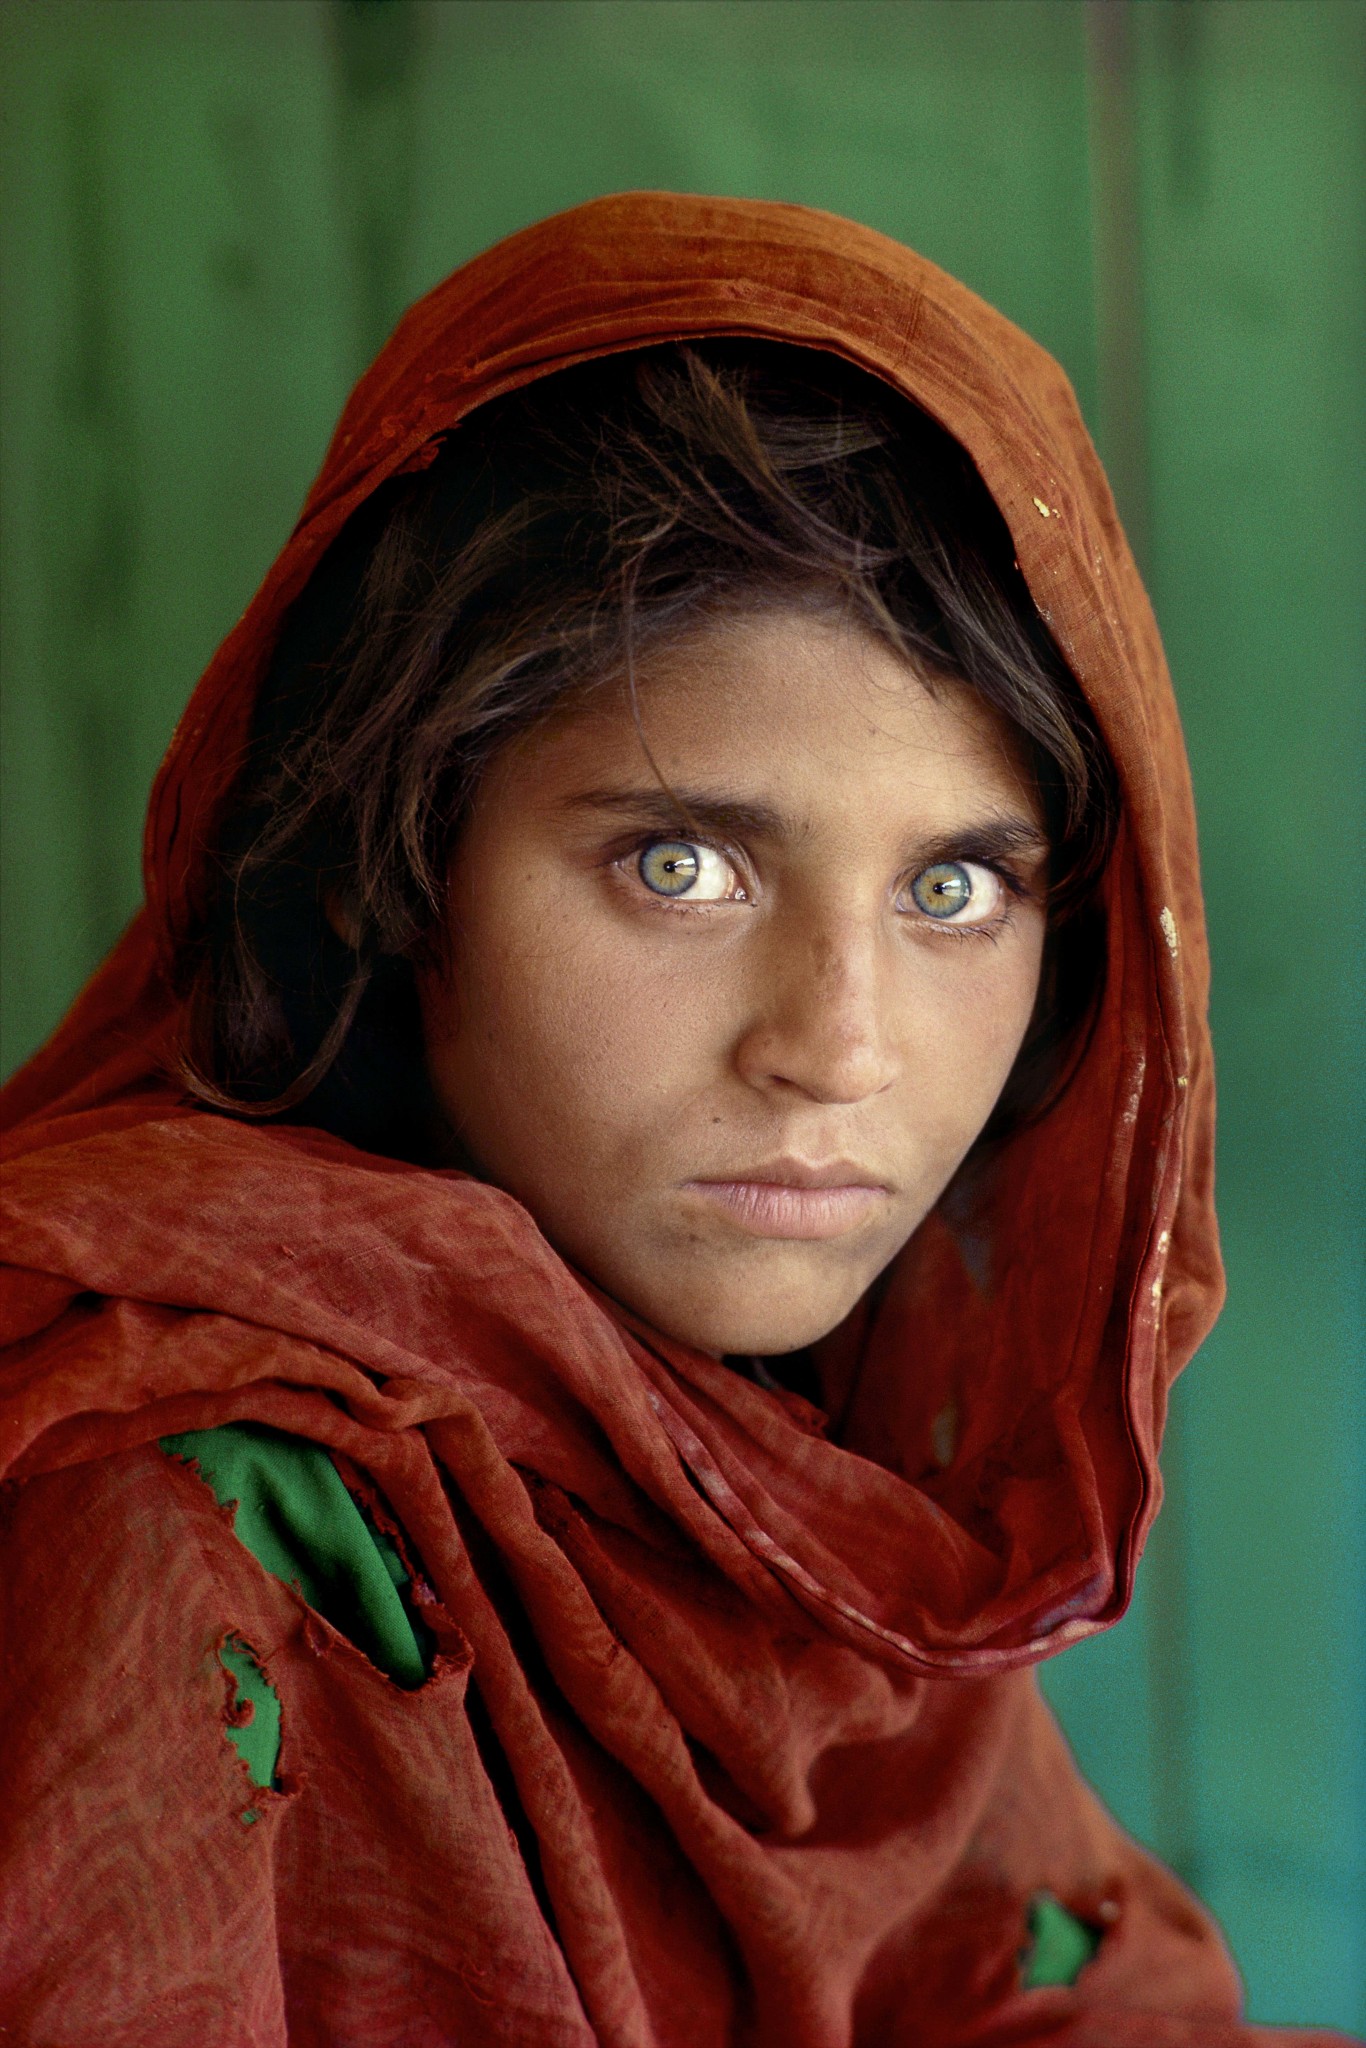 %D0%A4%D0%BE%D1%82%D0%BE%D0%B3%D1%80%D0%B0%D1%84%D0%B8%D1%8F Steve McCurry Afghan girl